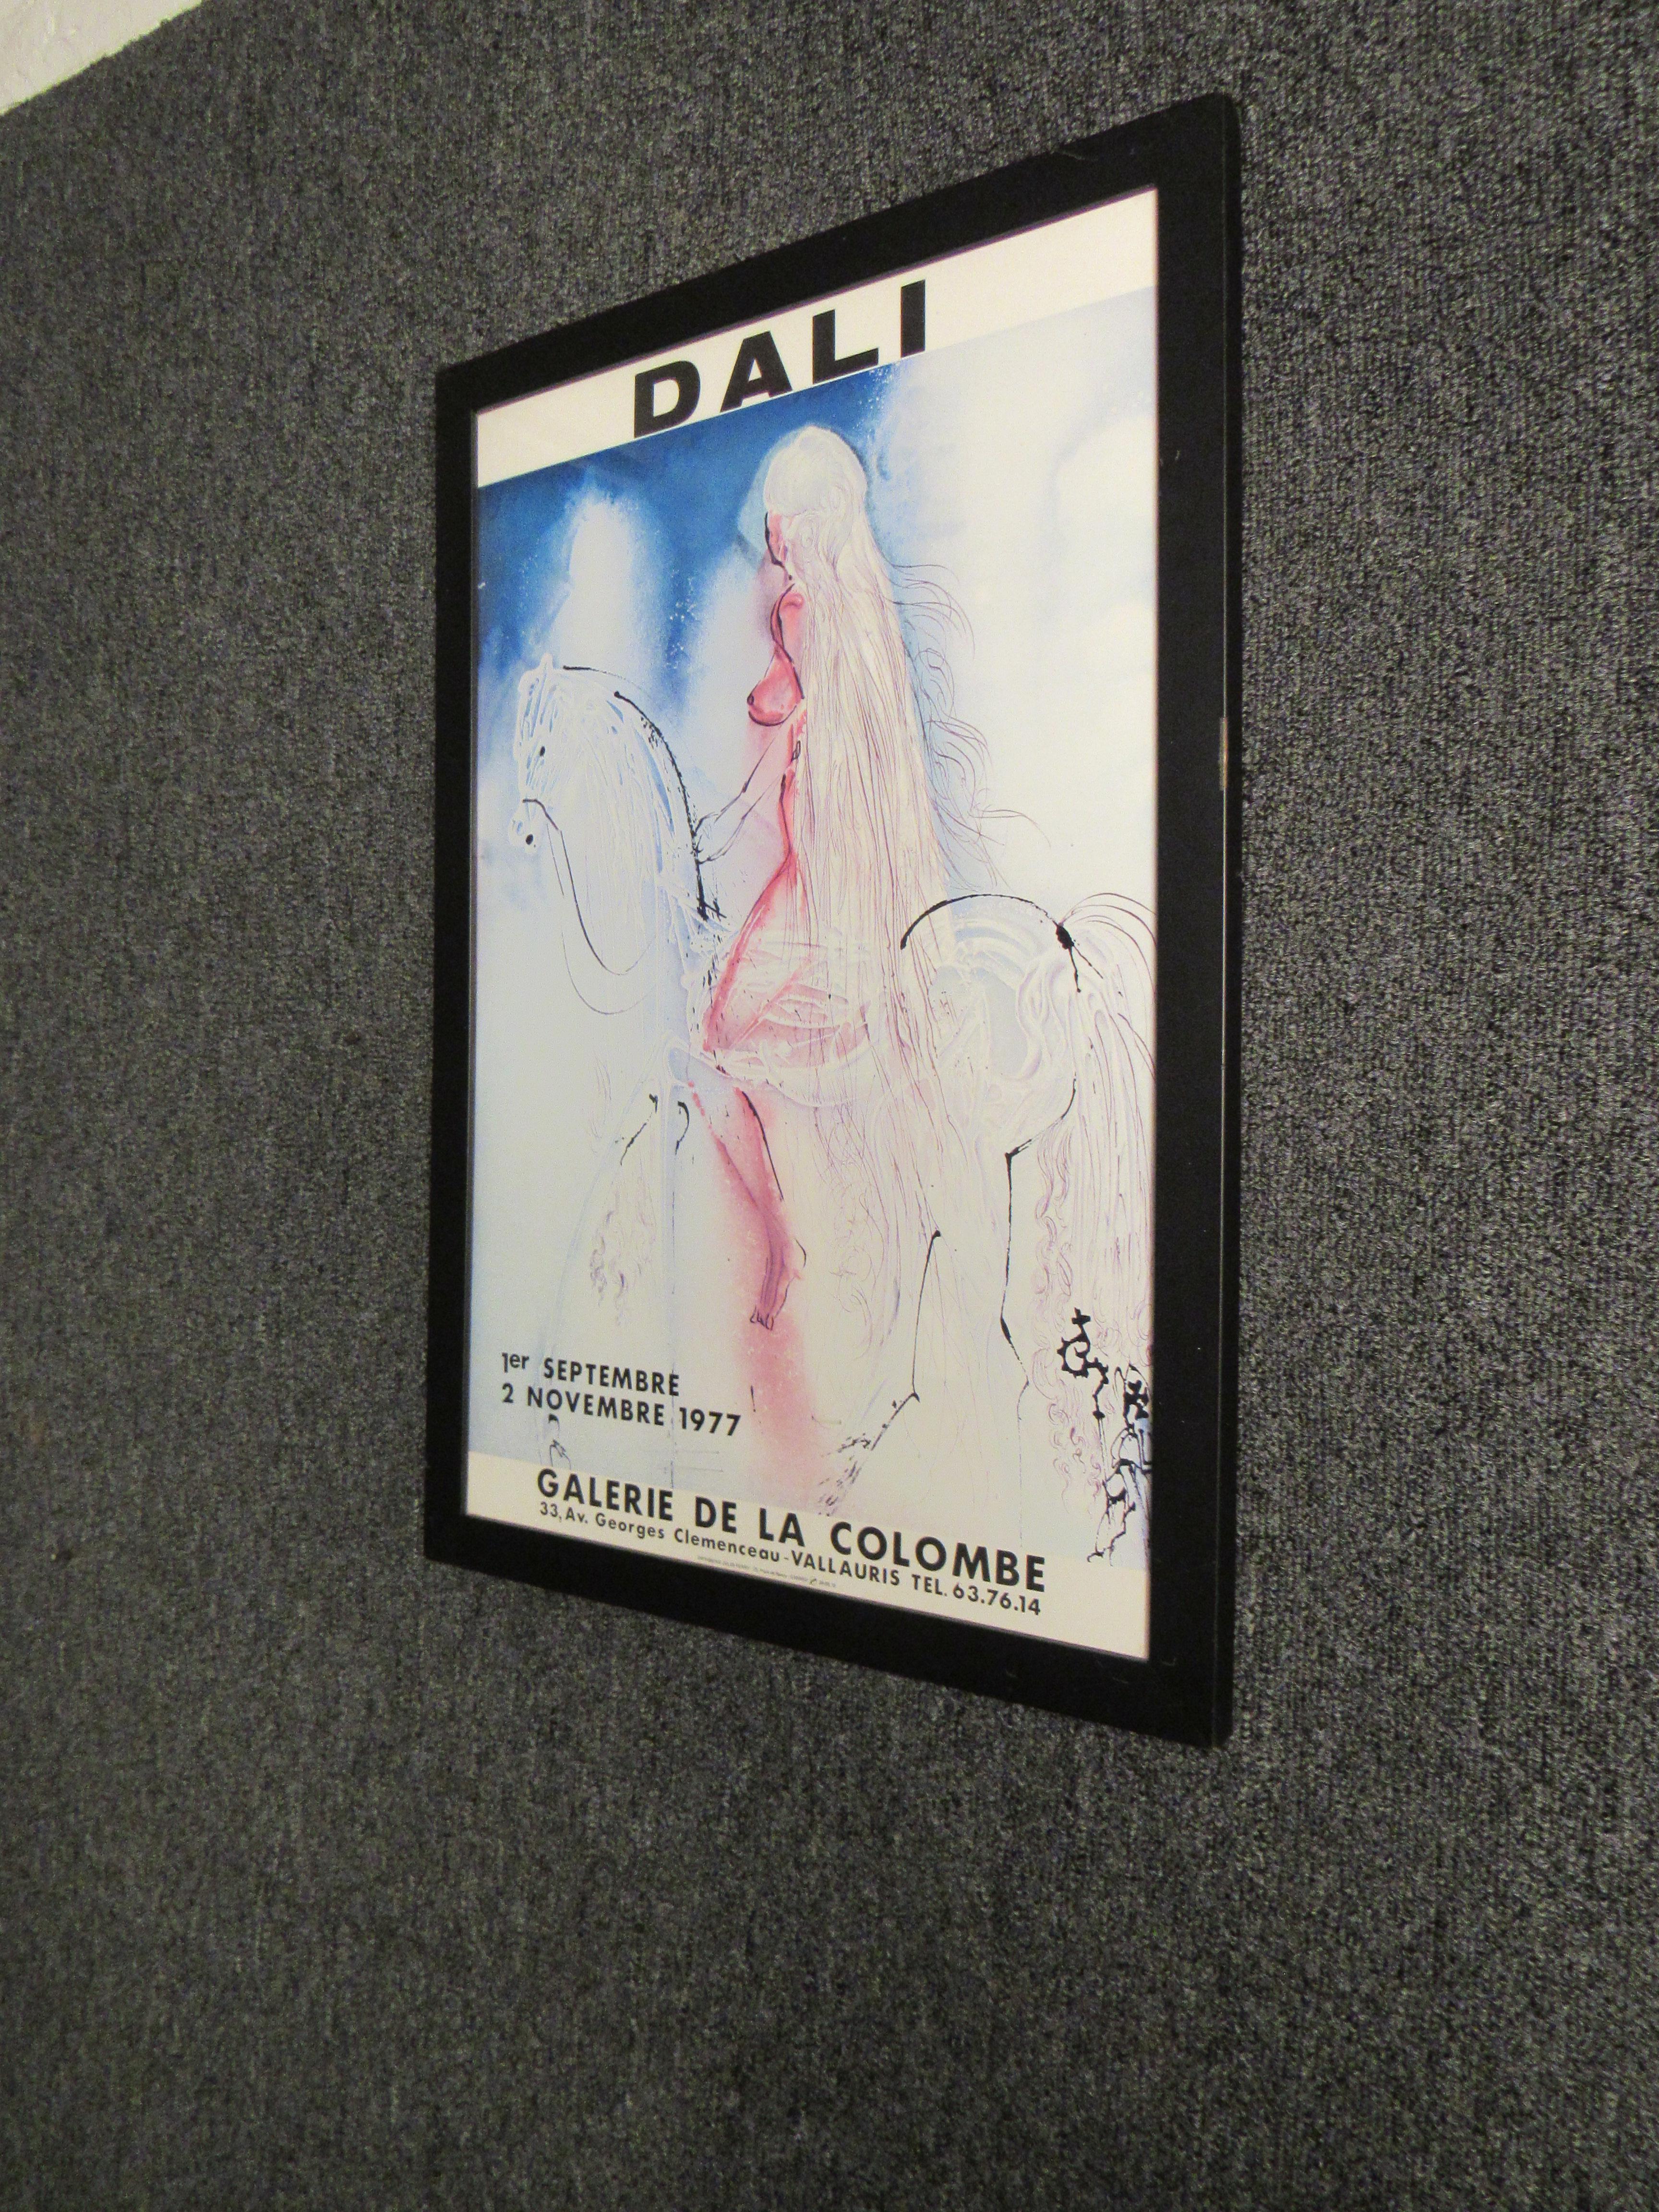 Lorsqu'il est question de véritable génie artistique, peu de noms sont plus souvent cités que celui de Salvador Dali. Maître incontestable du surréalisme du XXe siècle, l'œuvre de Can est présente dans presque tous les grands musées d'art du monde.